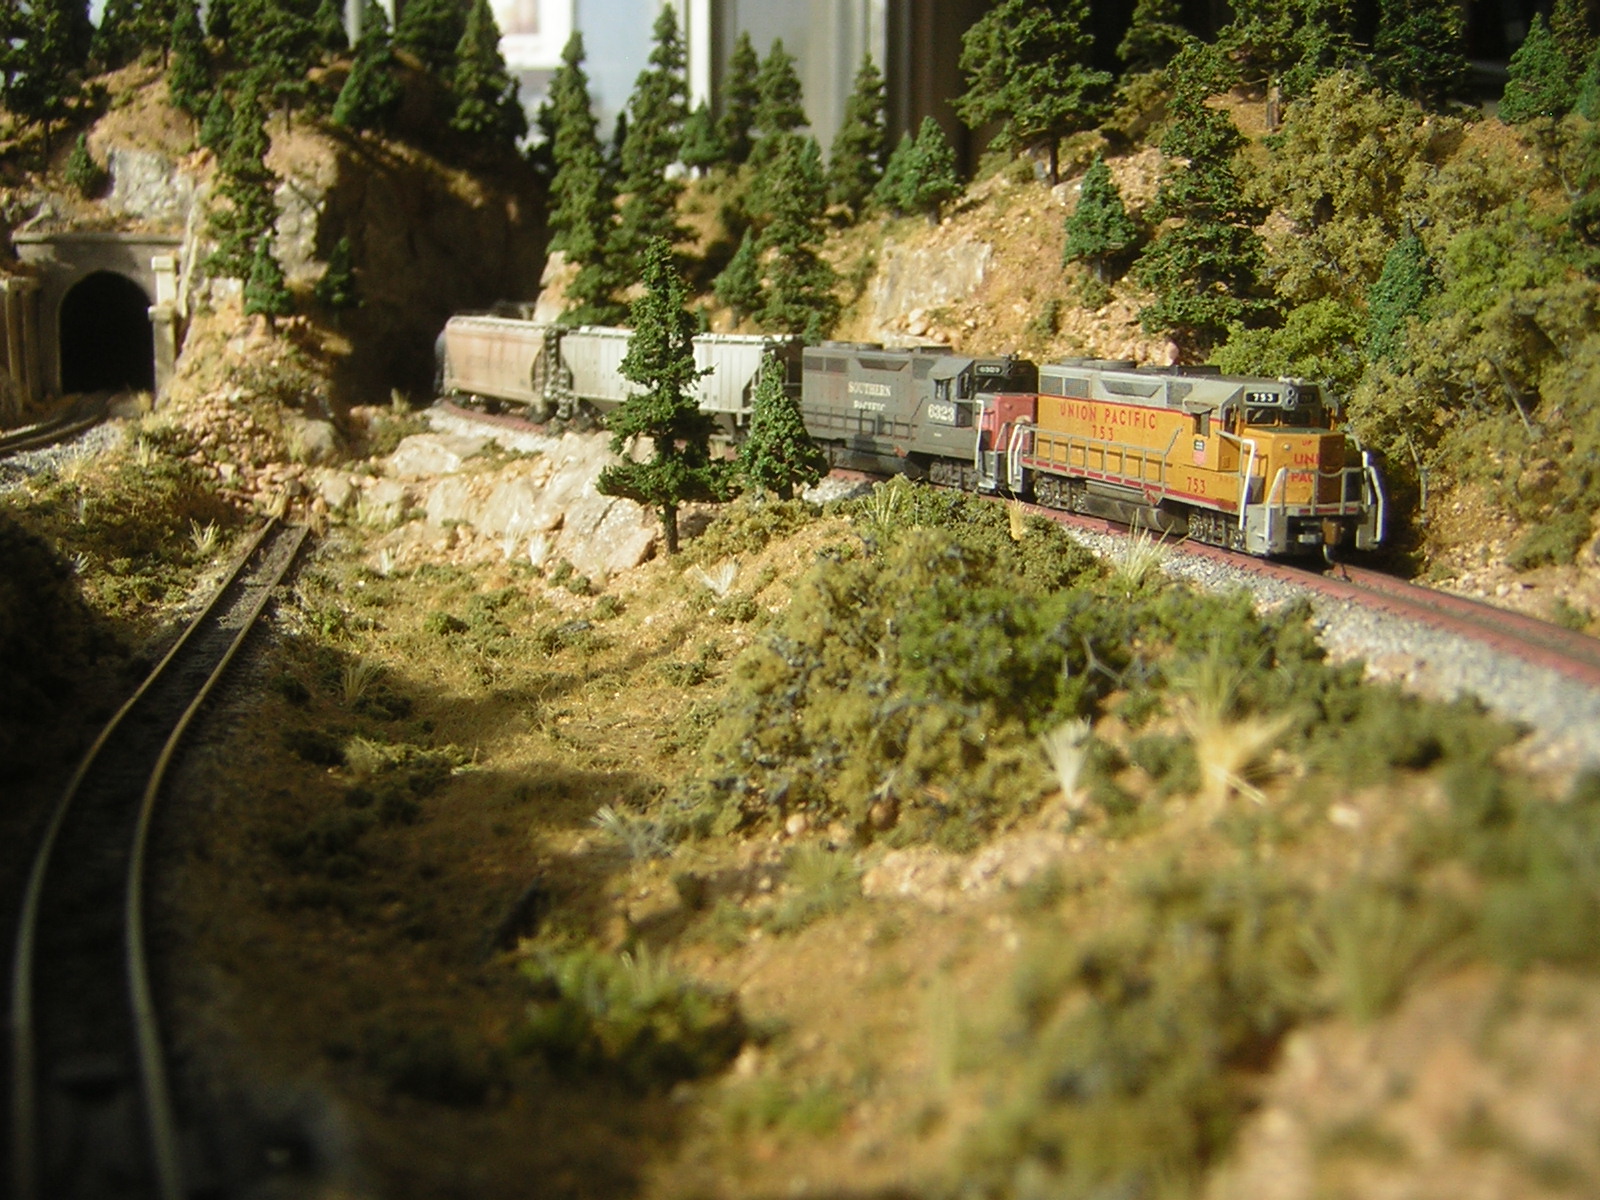 z scale railroad